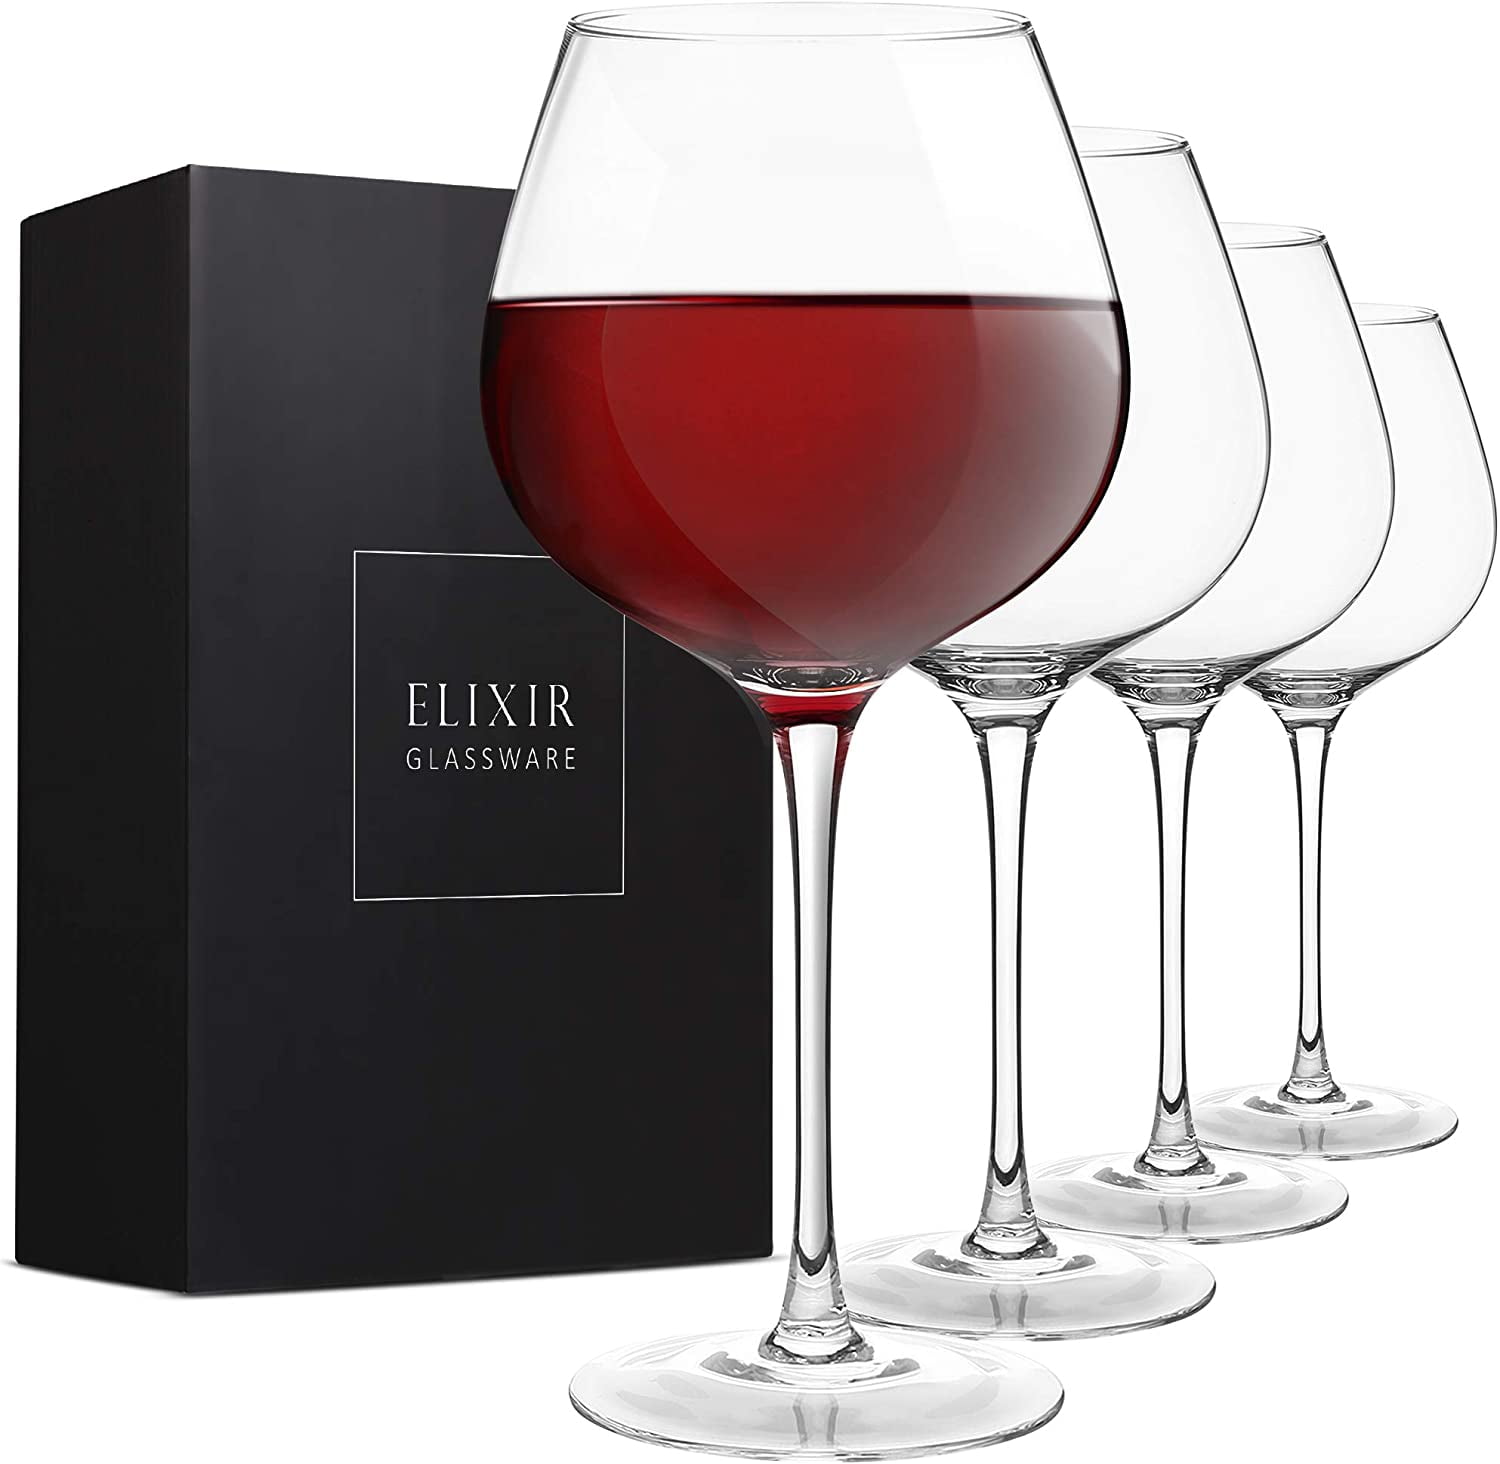 Reserve Nouveau 22oz Sunset Wine Glasses by Viski (Set of 4)